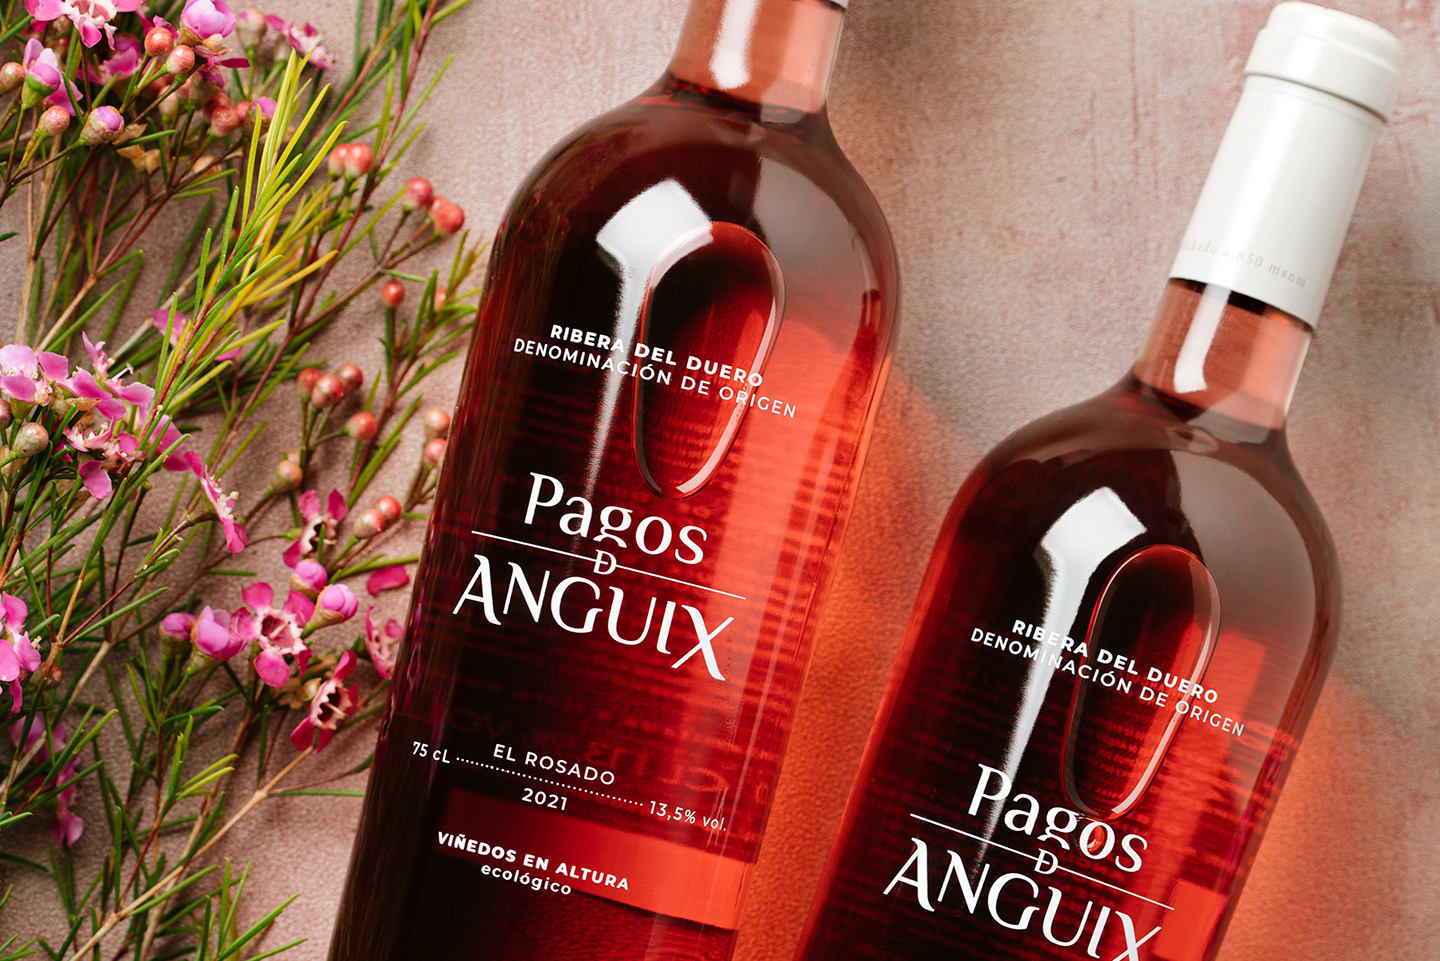 El Rosado 2021 de Pagos de Anguix, elegant i versàtil, és un homenatge als històrics “claretes” de la Ribera del Duero